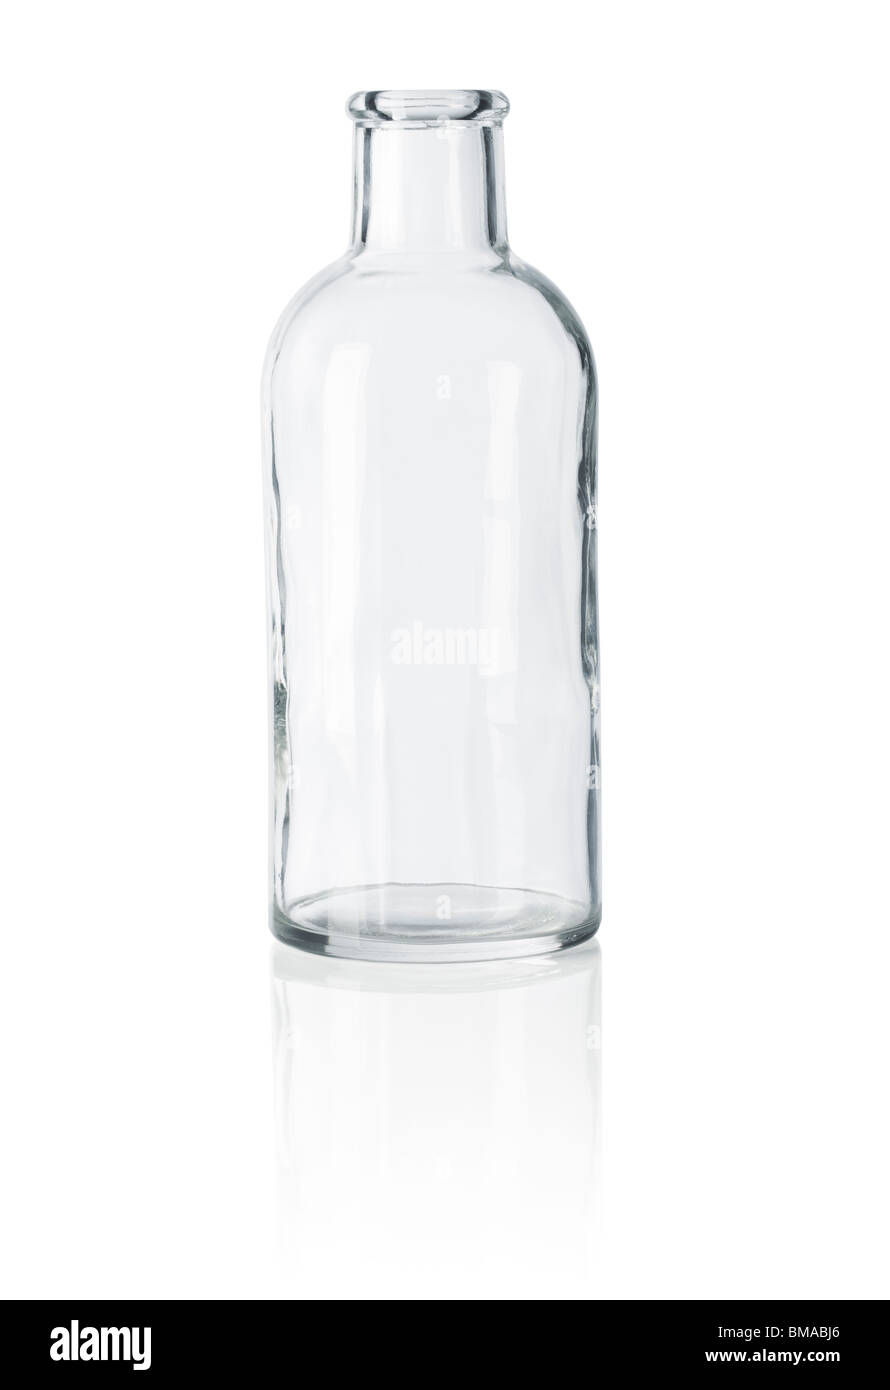 Vecchia bottiglia in vetro bianco su sfondo riflettente Foto Stock